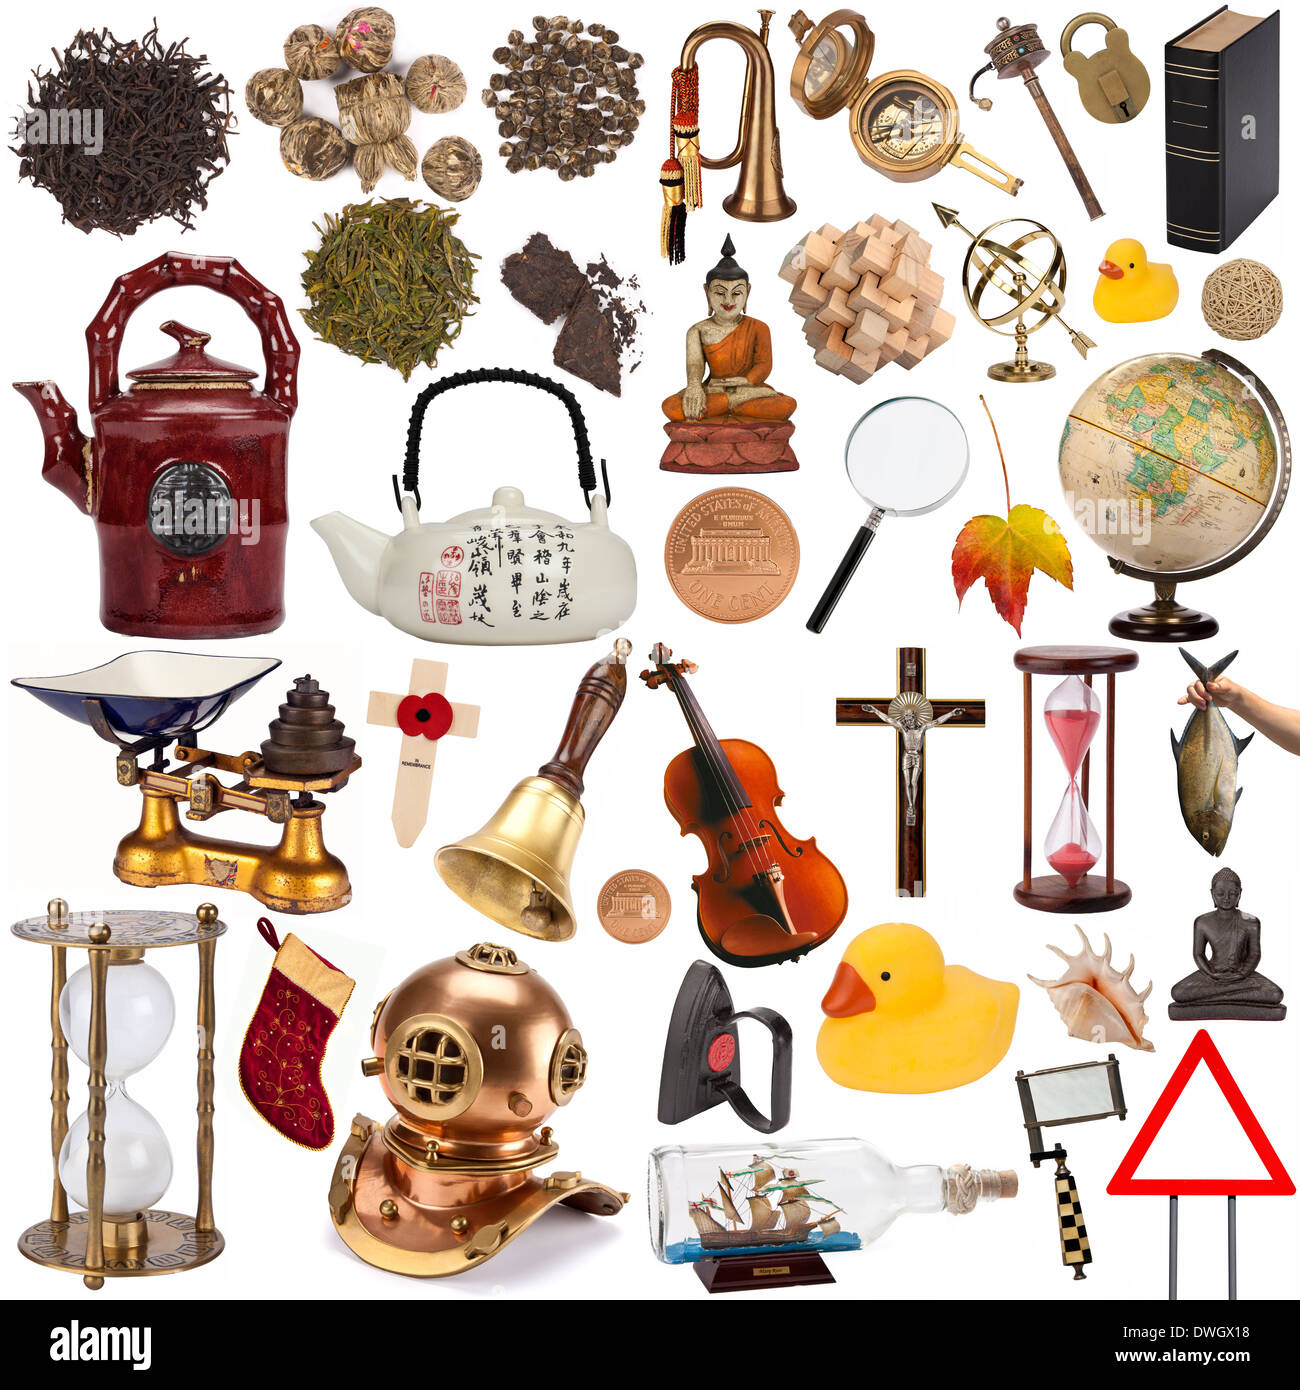 Une sélection d'objets de décoration - Isolé sur fond blanc. Banque D'Images